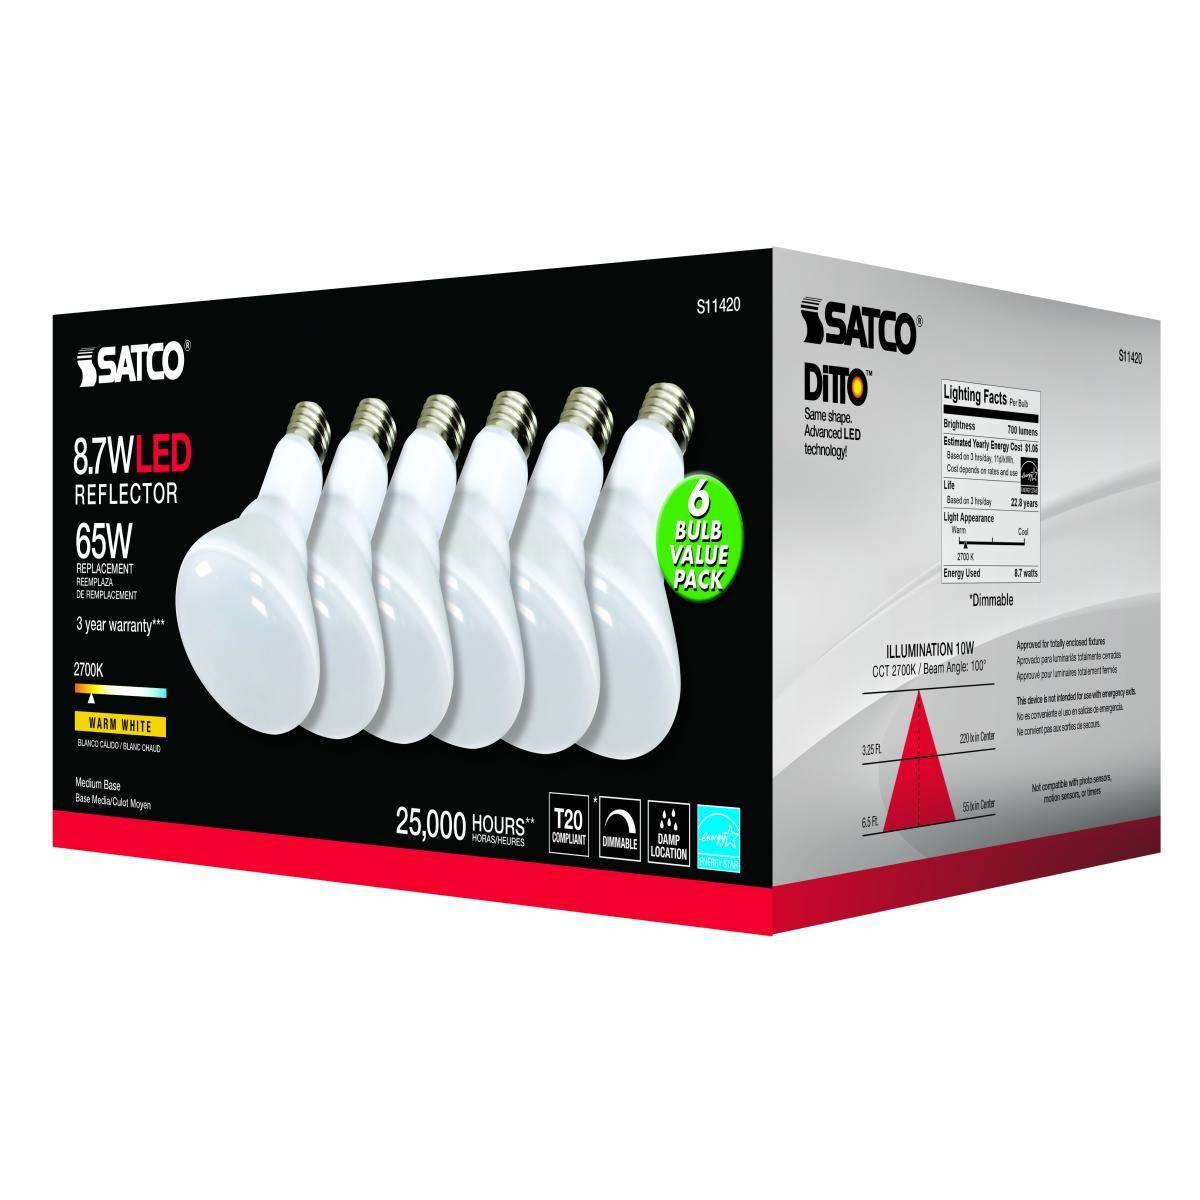 LED R30/BR30 Reflector bulb, 9 watt, 700 Lumens, 2700K, E26 Medium Base, 100 Deg. Flood, Dimmable - Bees Lighting